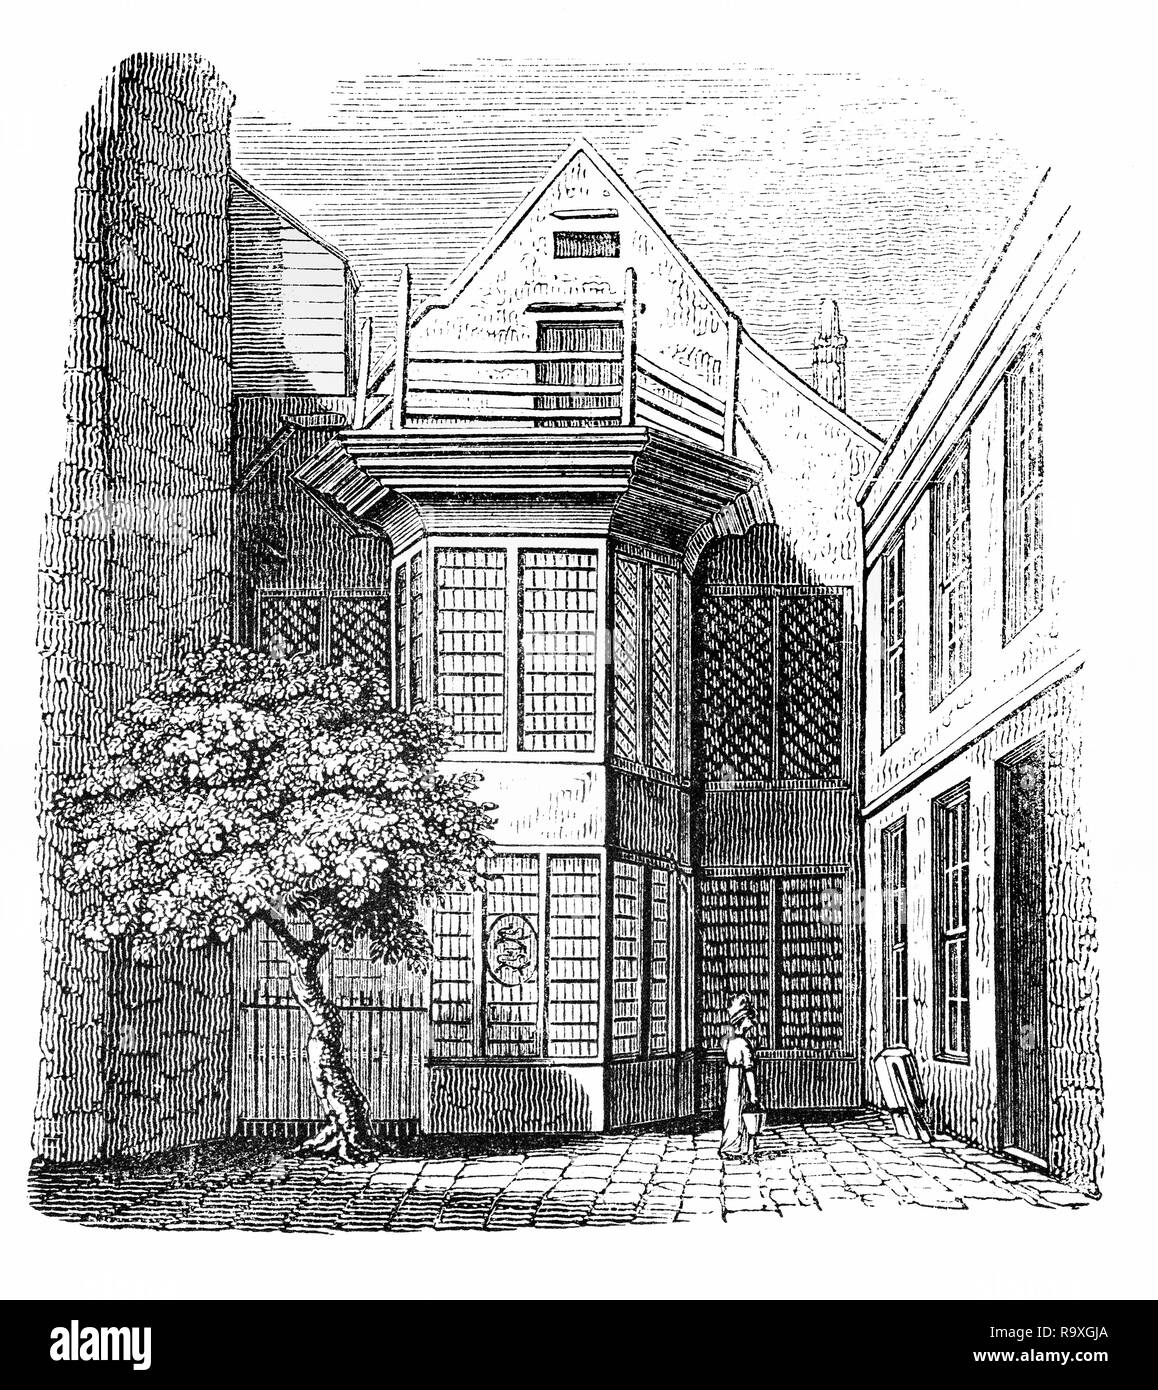 Bangor House di scarpa Lane, o scarpa Alley come era chiamato talvolta nel sedicesimo secolo, era al di fuori delle mura della città, presso il reparto di Faringdon senza. È stata la casa di città dei vescovi di Bangor e adiacente il sagrato della chiesa di Sant'Andrea, Holborn, città di Londra, Inghilterra, acquistata poi da Sir John Barkstead nel 1647, ma dopo il restauro è ritornato ai Vescovi di Bangor che vi risiedette. Foto Stock